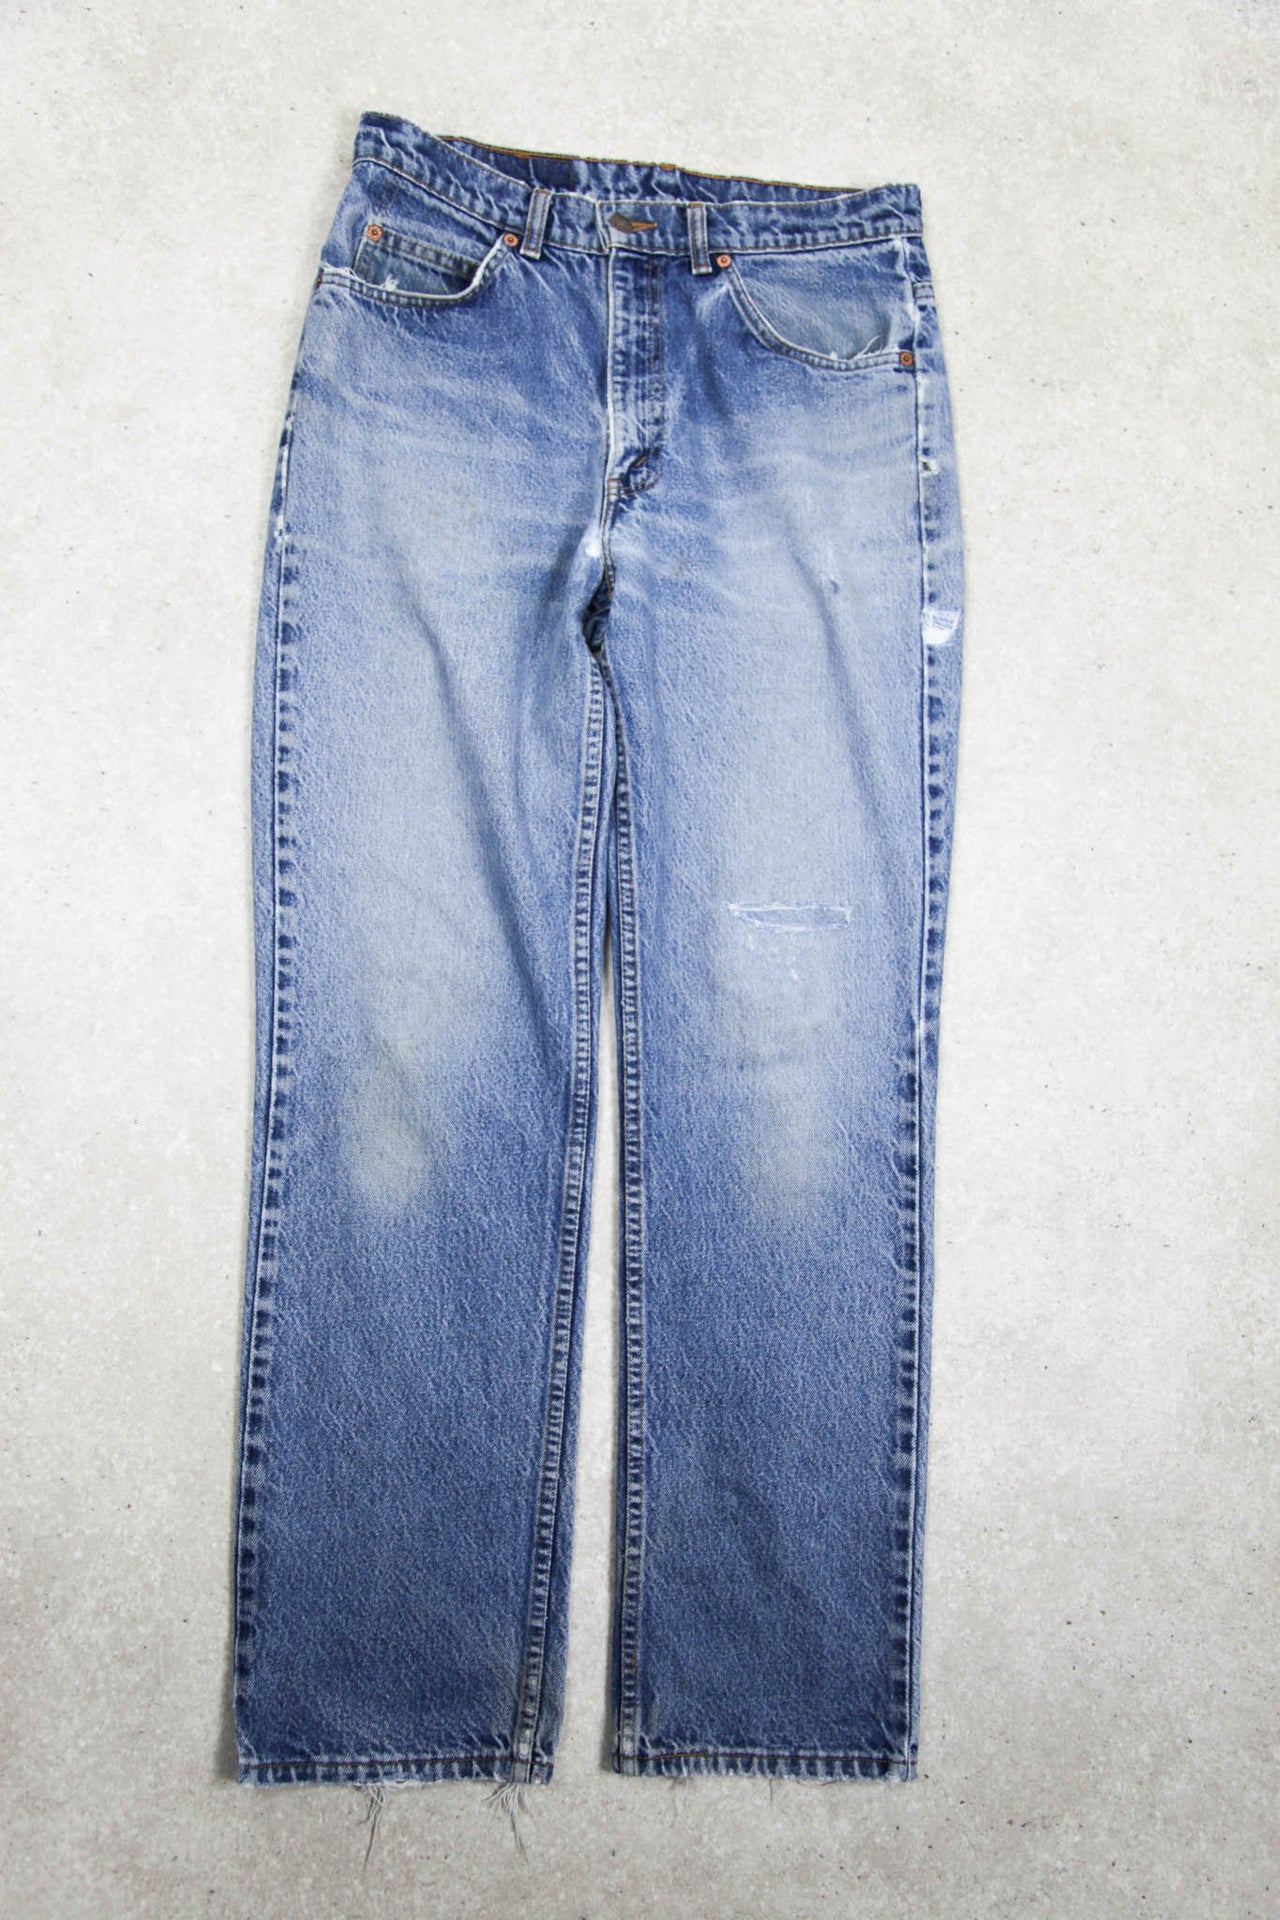 1999 Levi's 501 Jeans